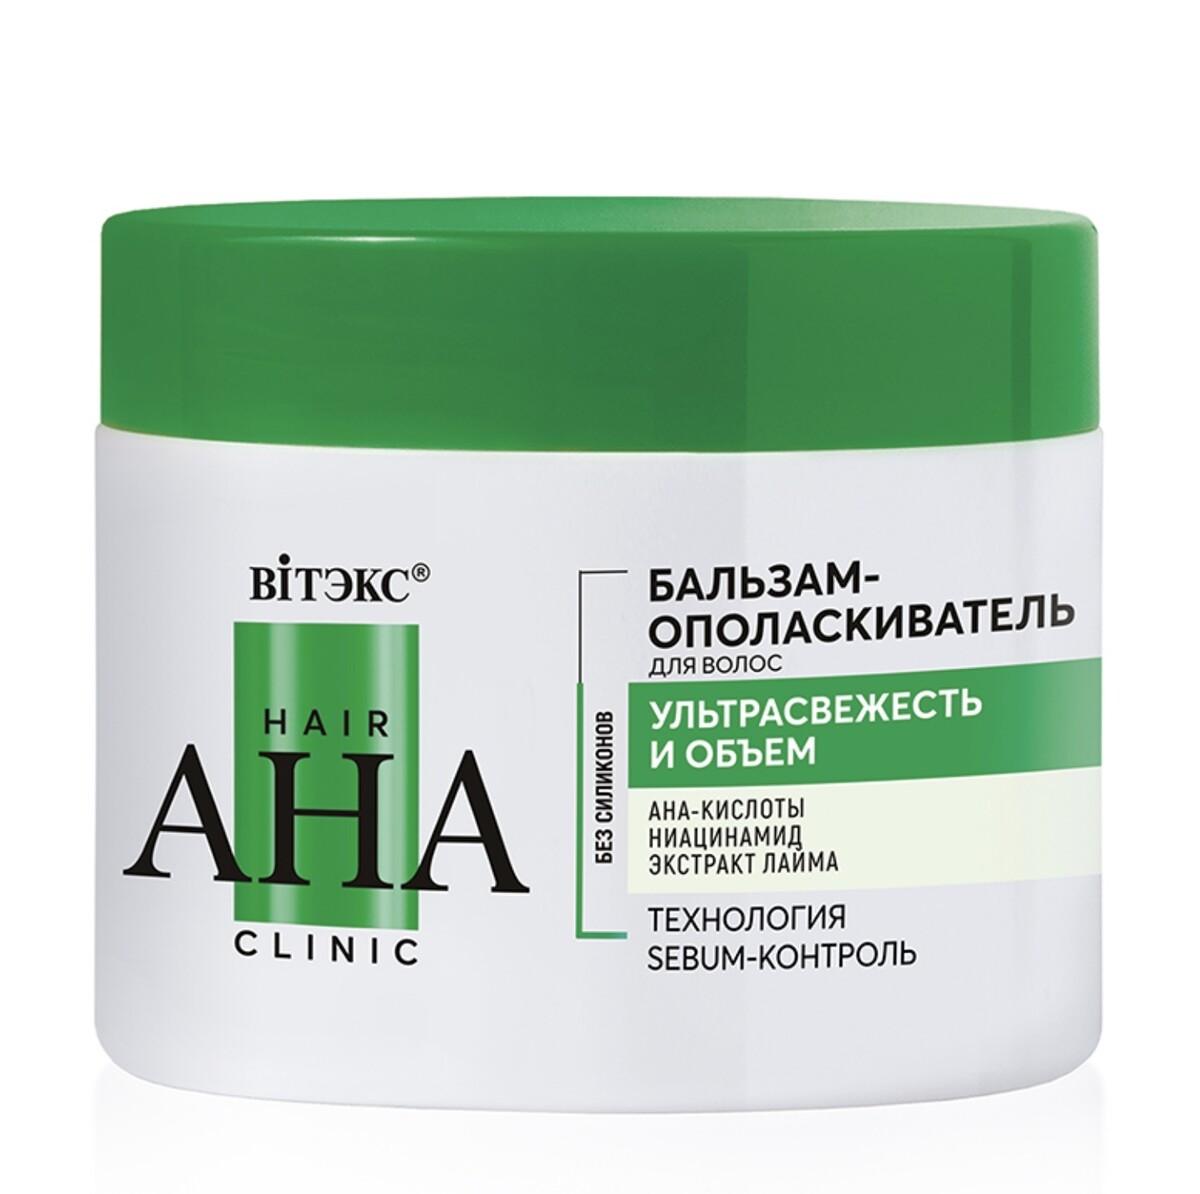 Hair aha clinic бальзам-ополаскиватель для волос ультрасвежесть и объем 300мл